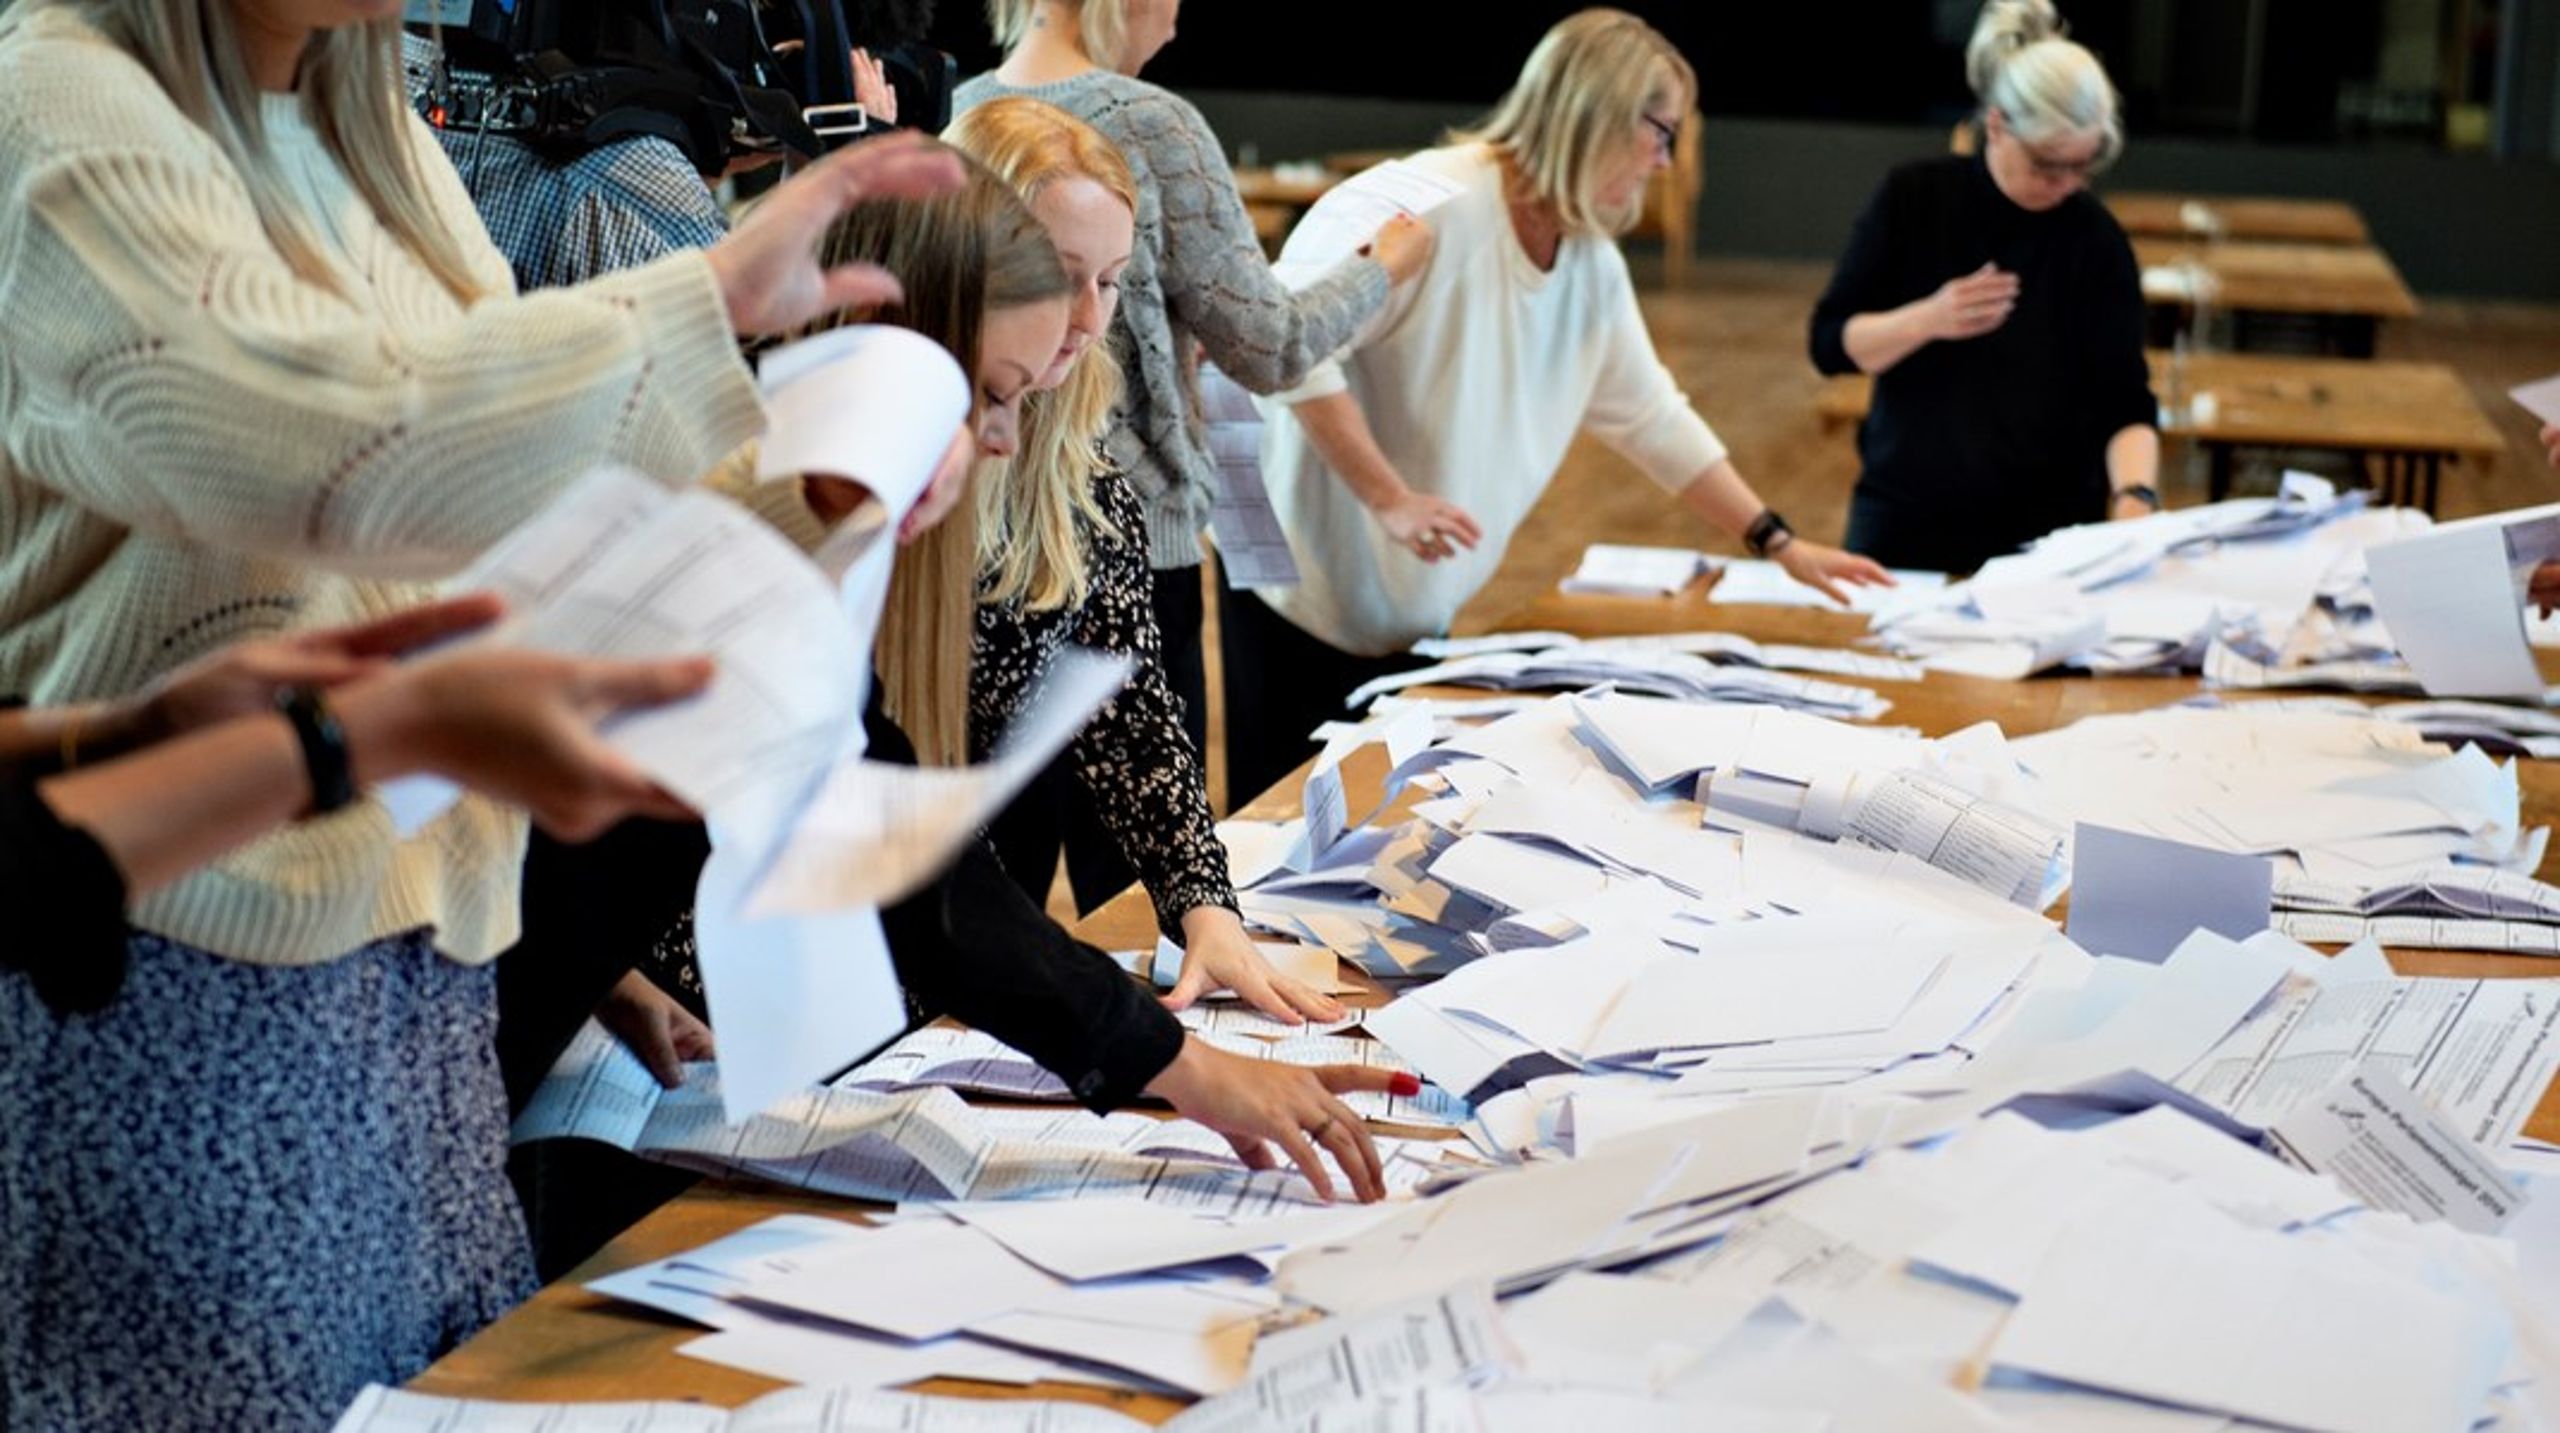 Flere steder i Europa får 16-årige mere demokratisk indflydelse, men står det til et stort flertal af danskerne, skal valgretsalderen til europaparlamentsvalg i Danmark blive ved 18 år. Arkivfoto.